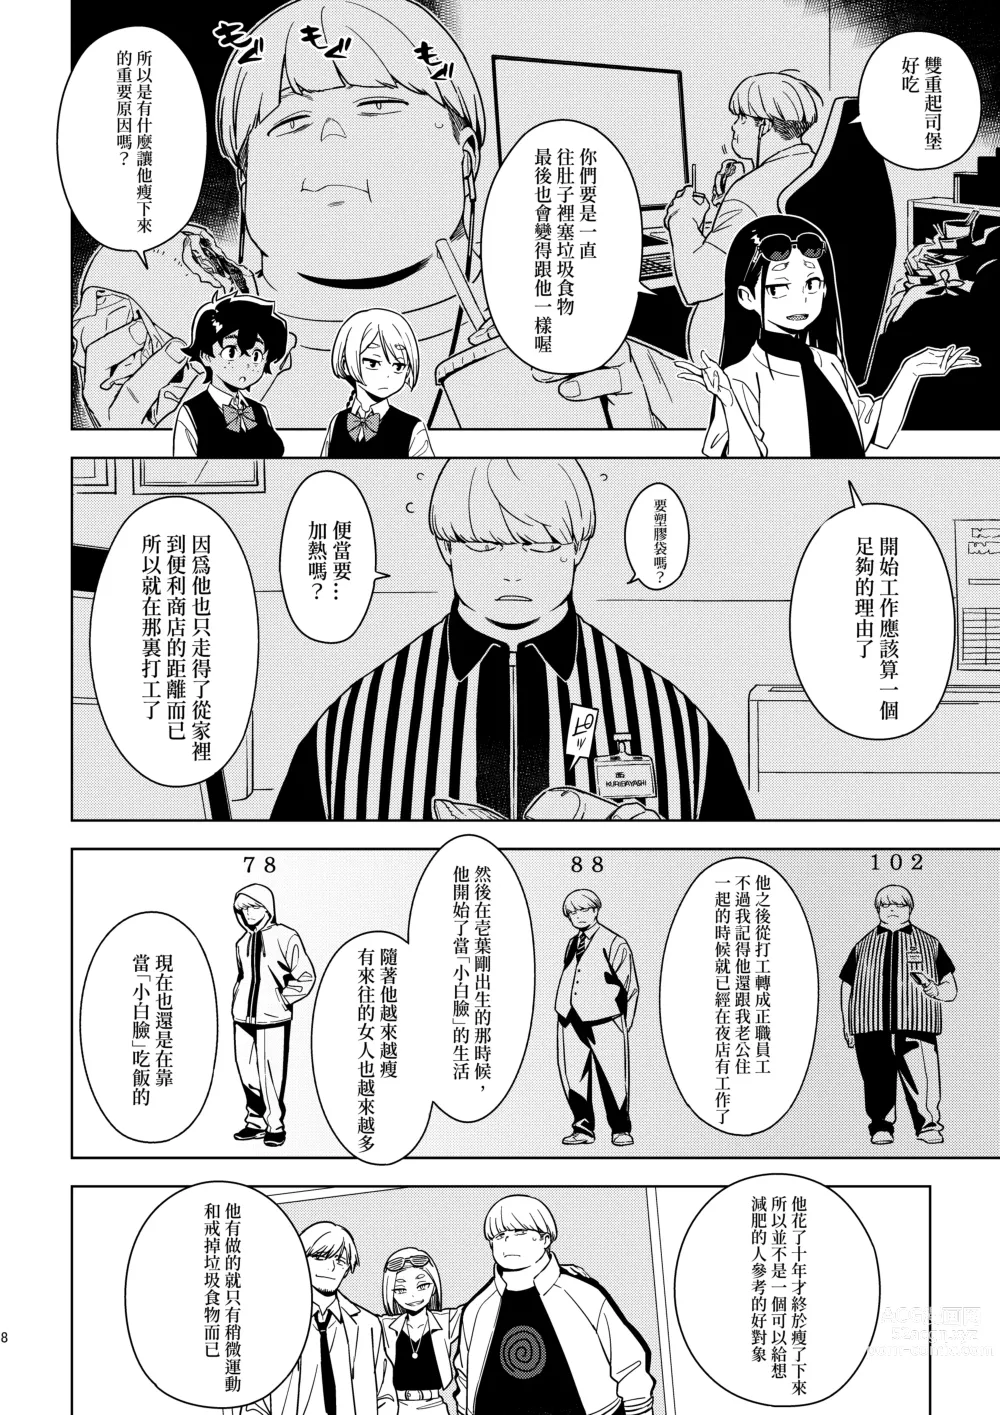 Page 7 of doujinshi Seiko